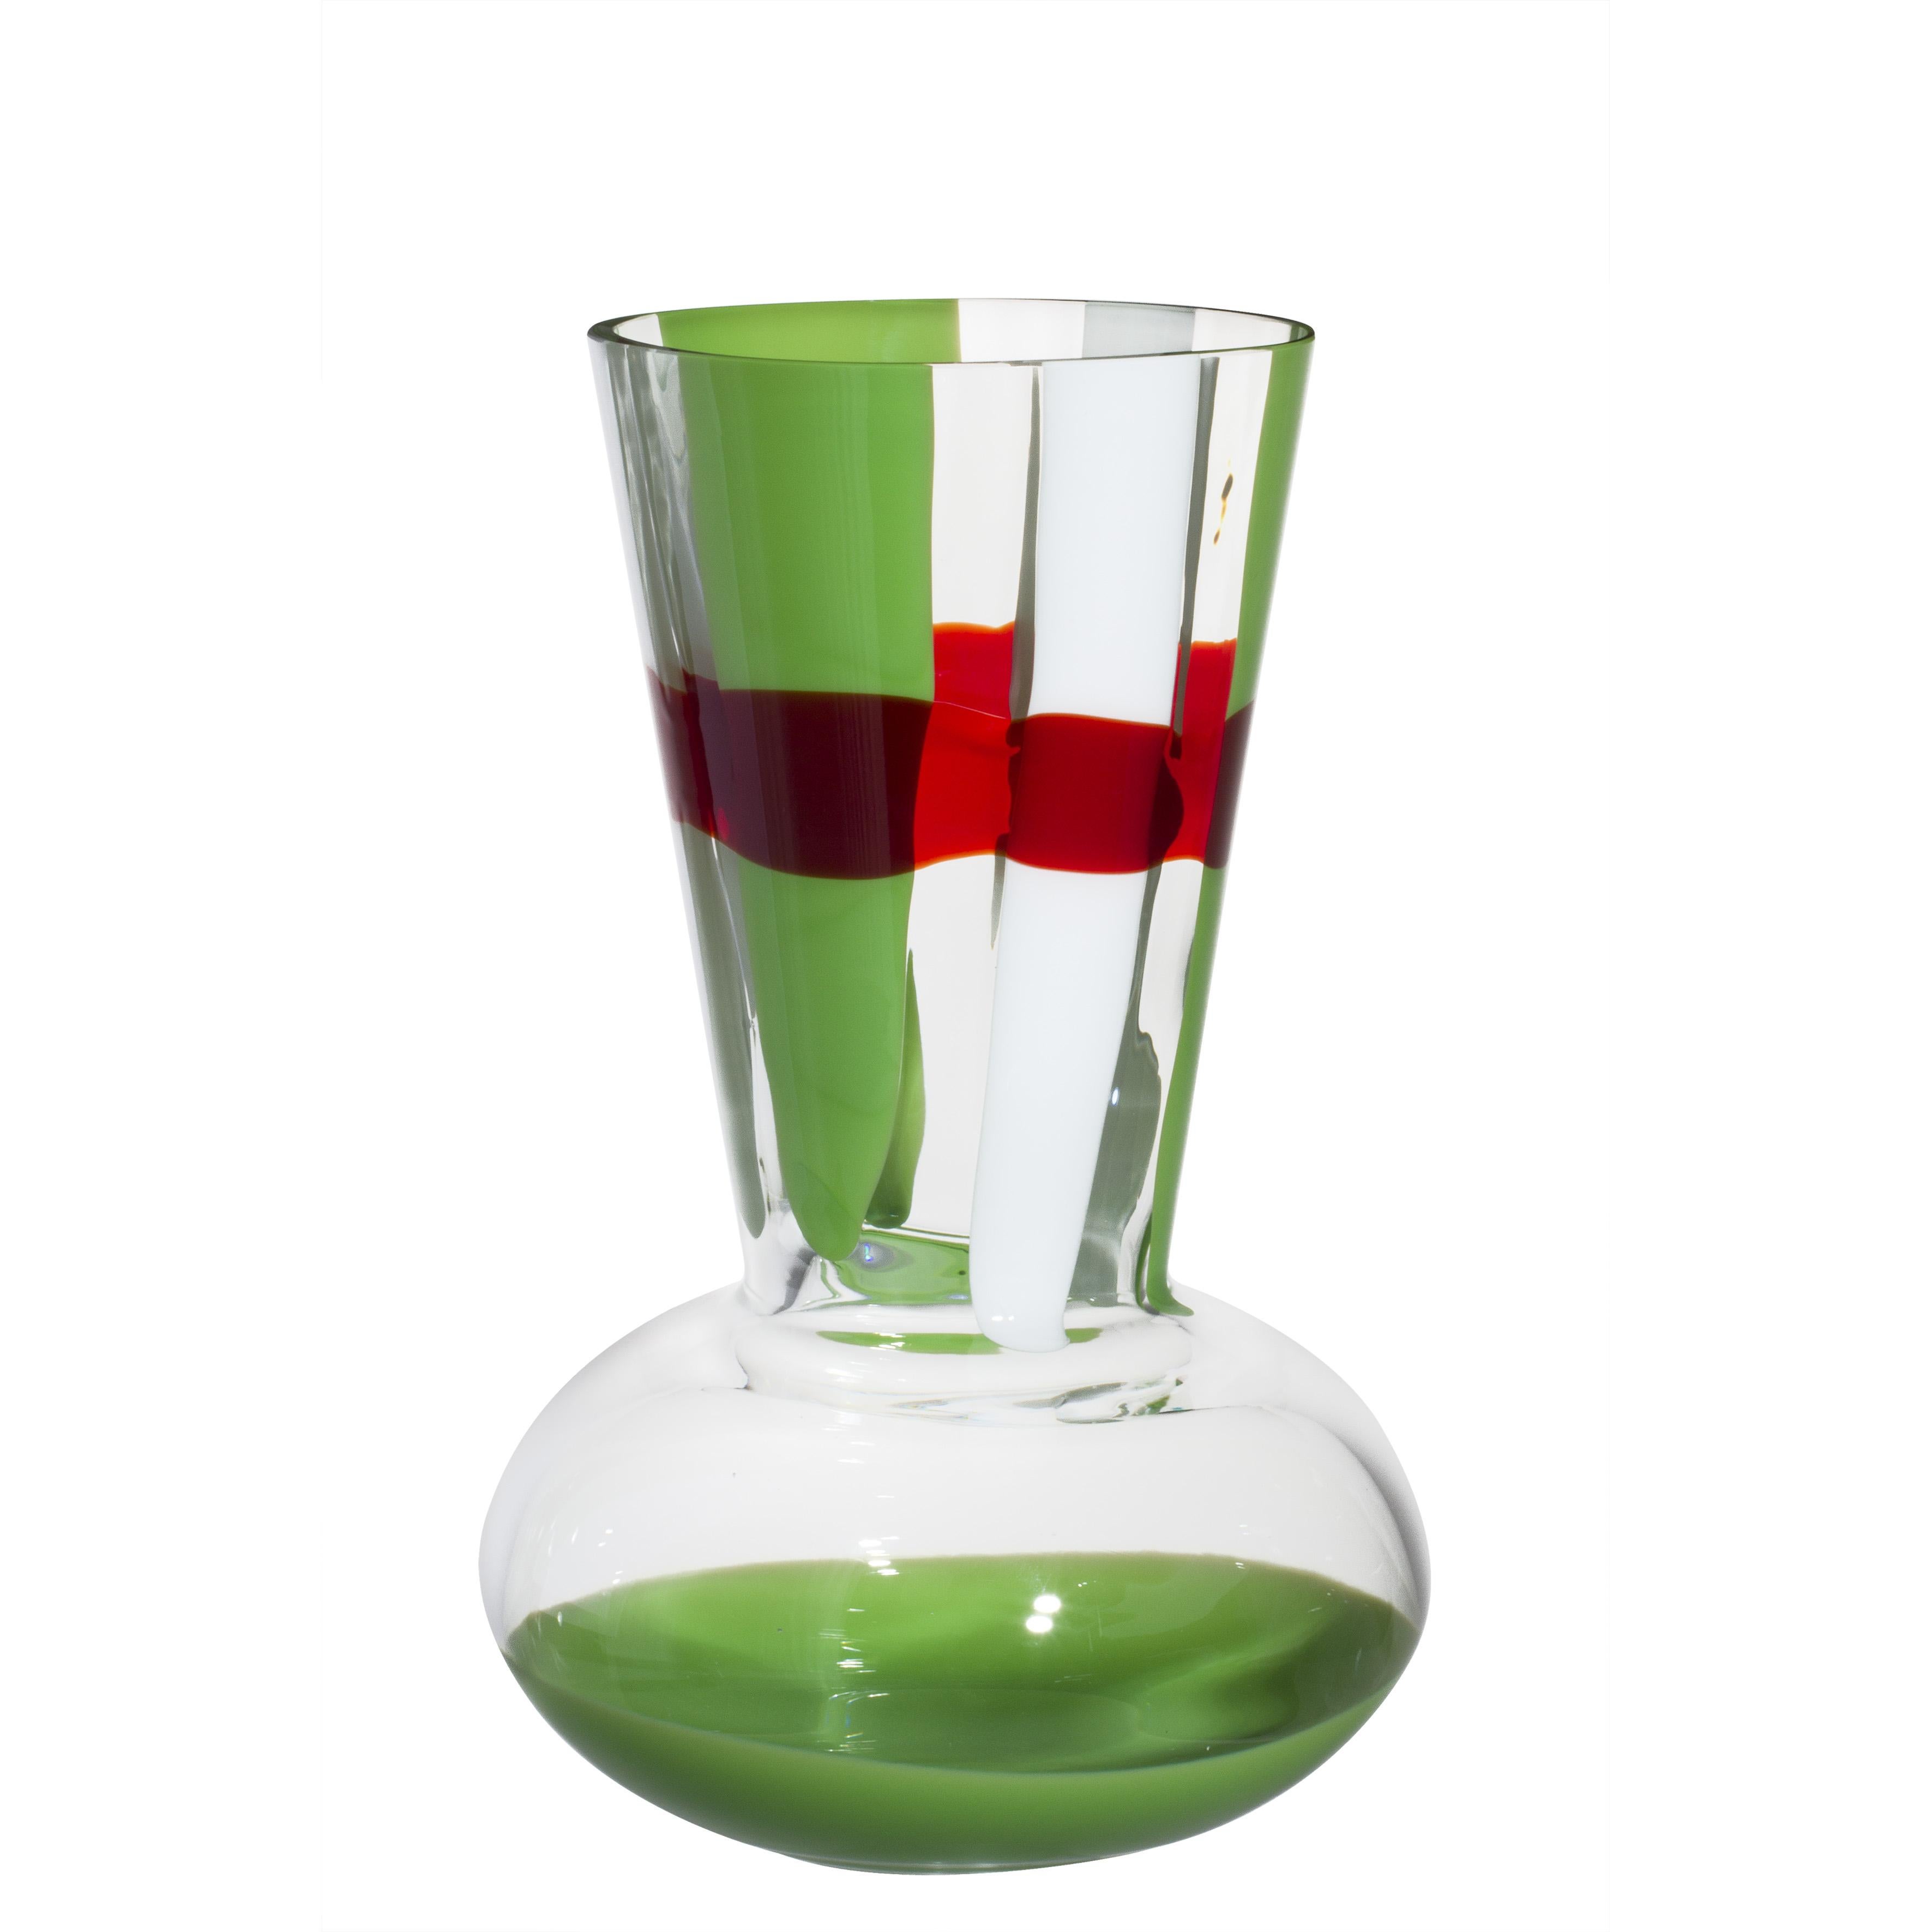 Vase Troncosfera de taille moyenne rouge, vert et blanc par Carlo Moretti